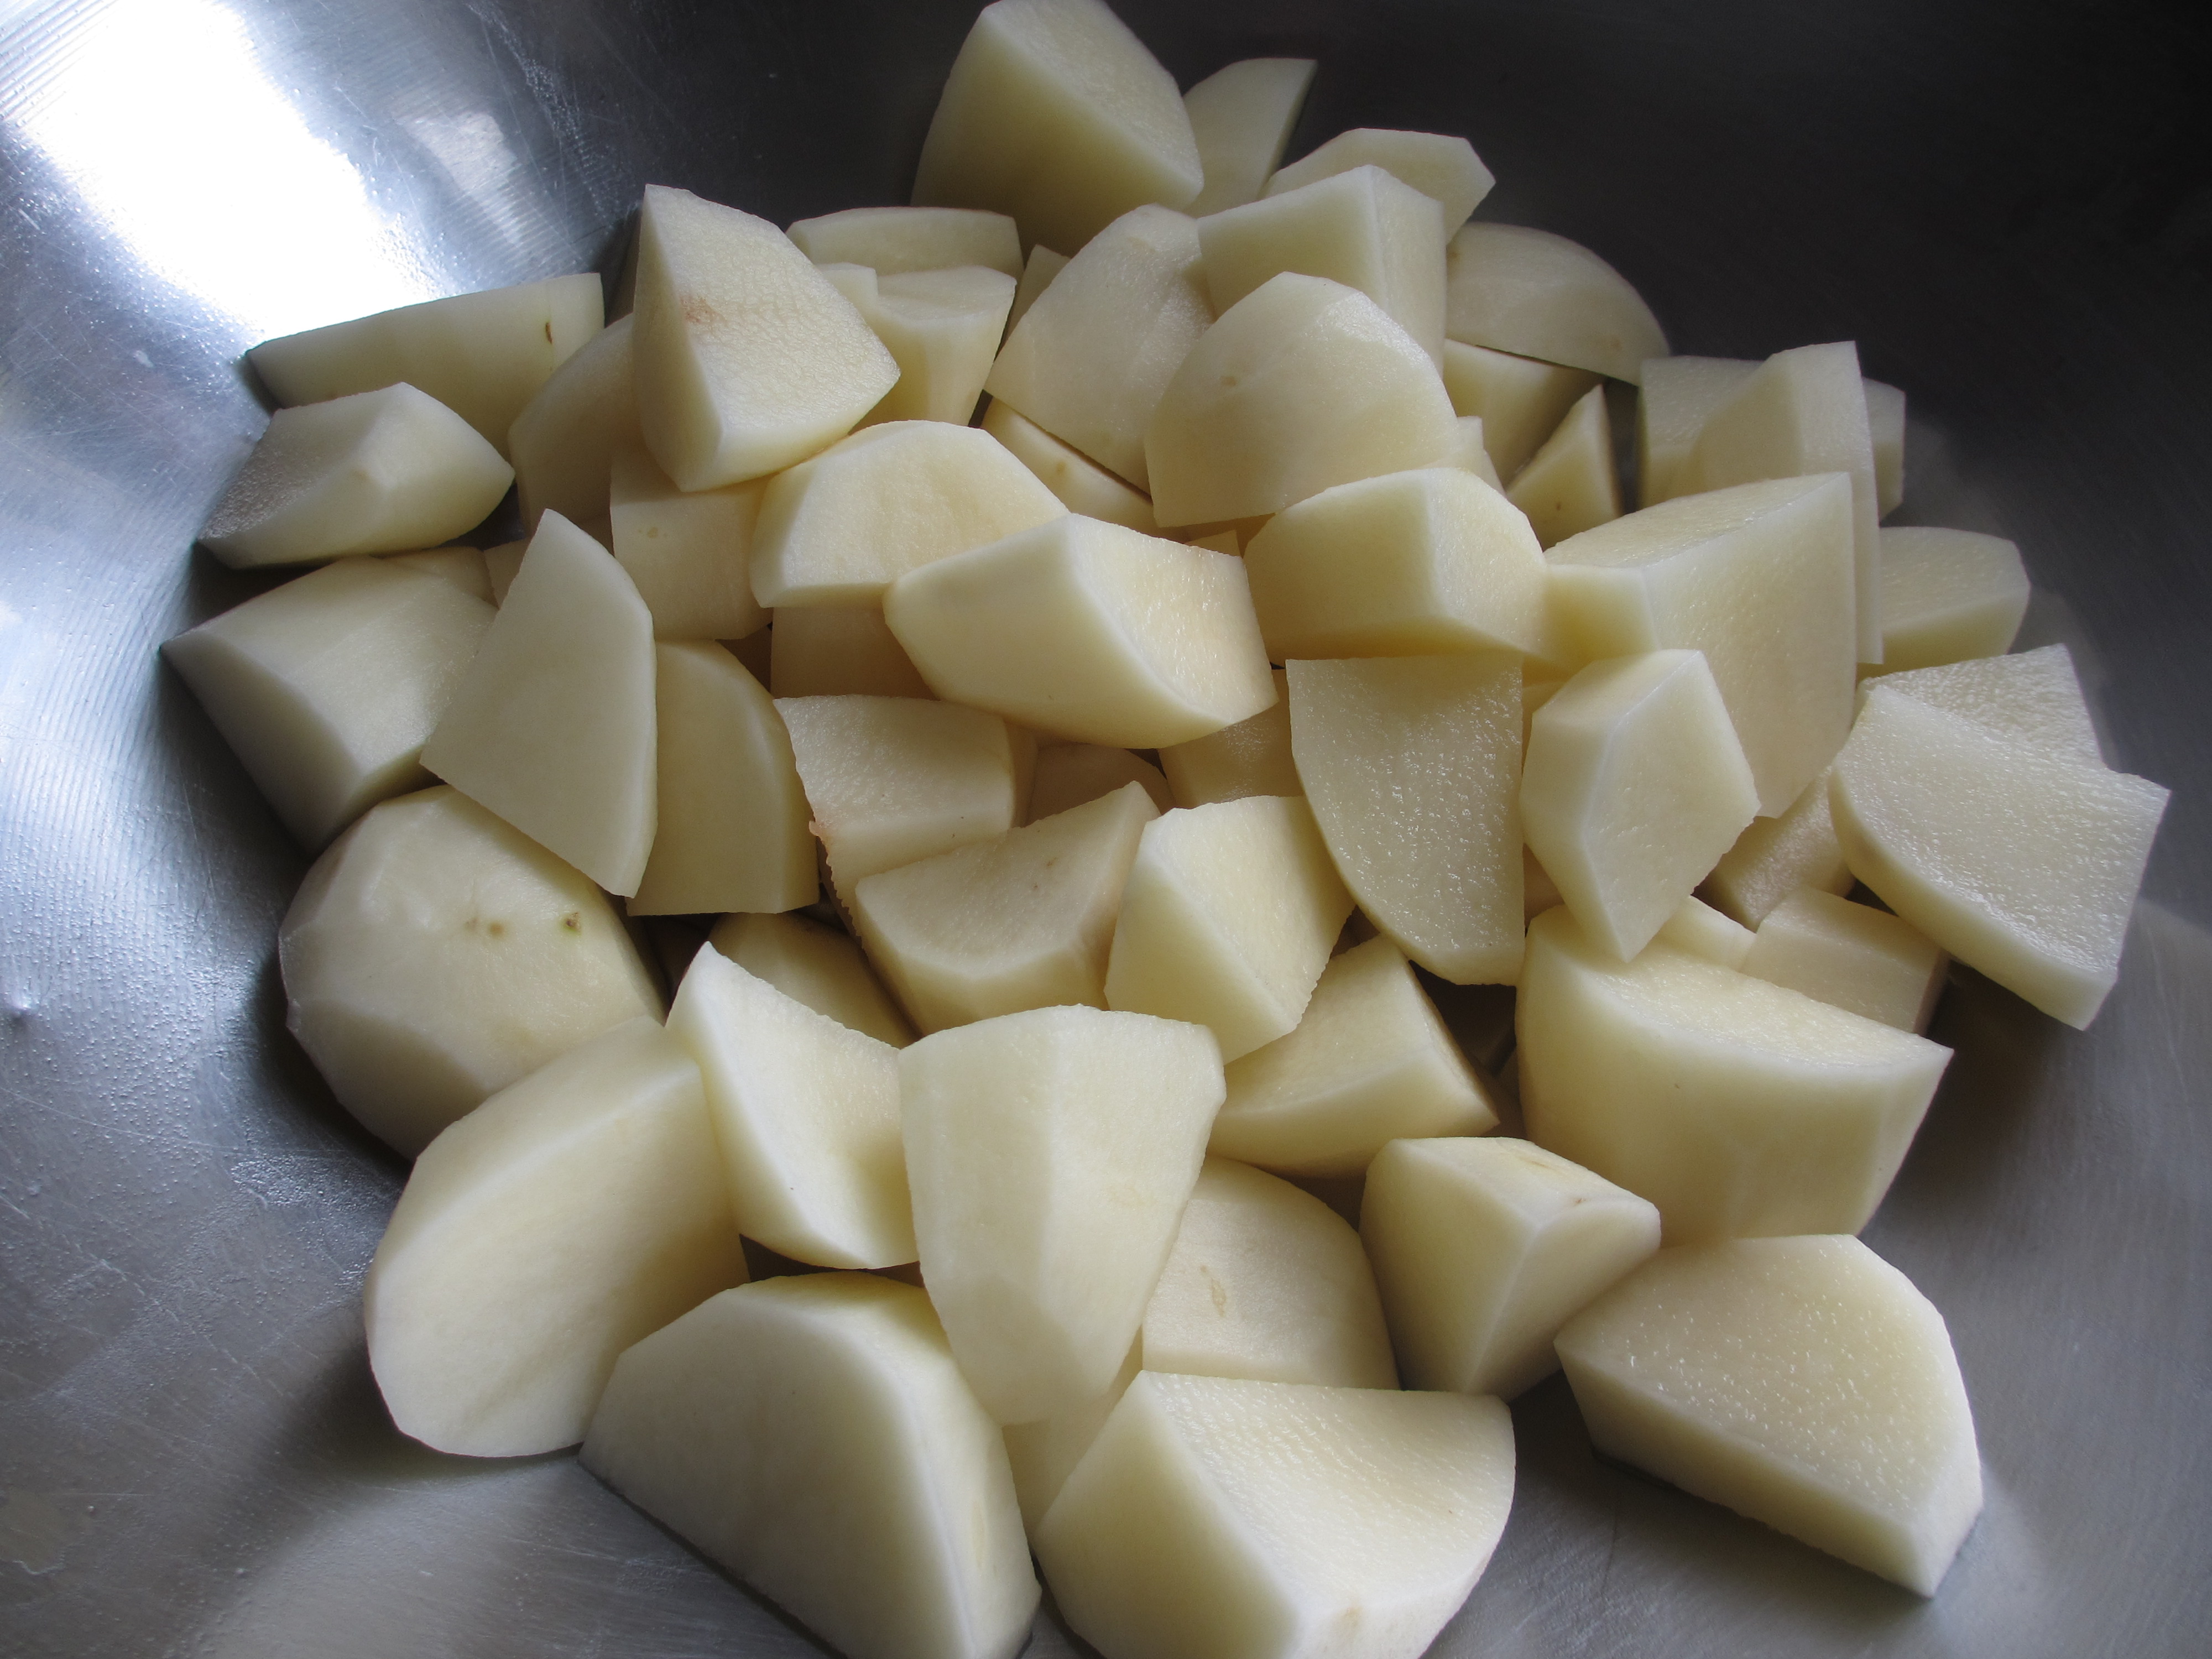 Chopped potatoes, raw